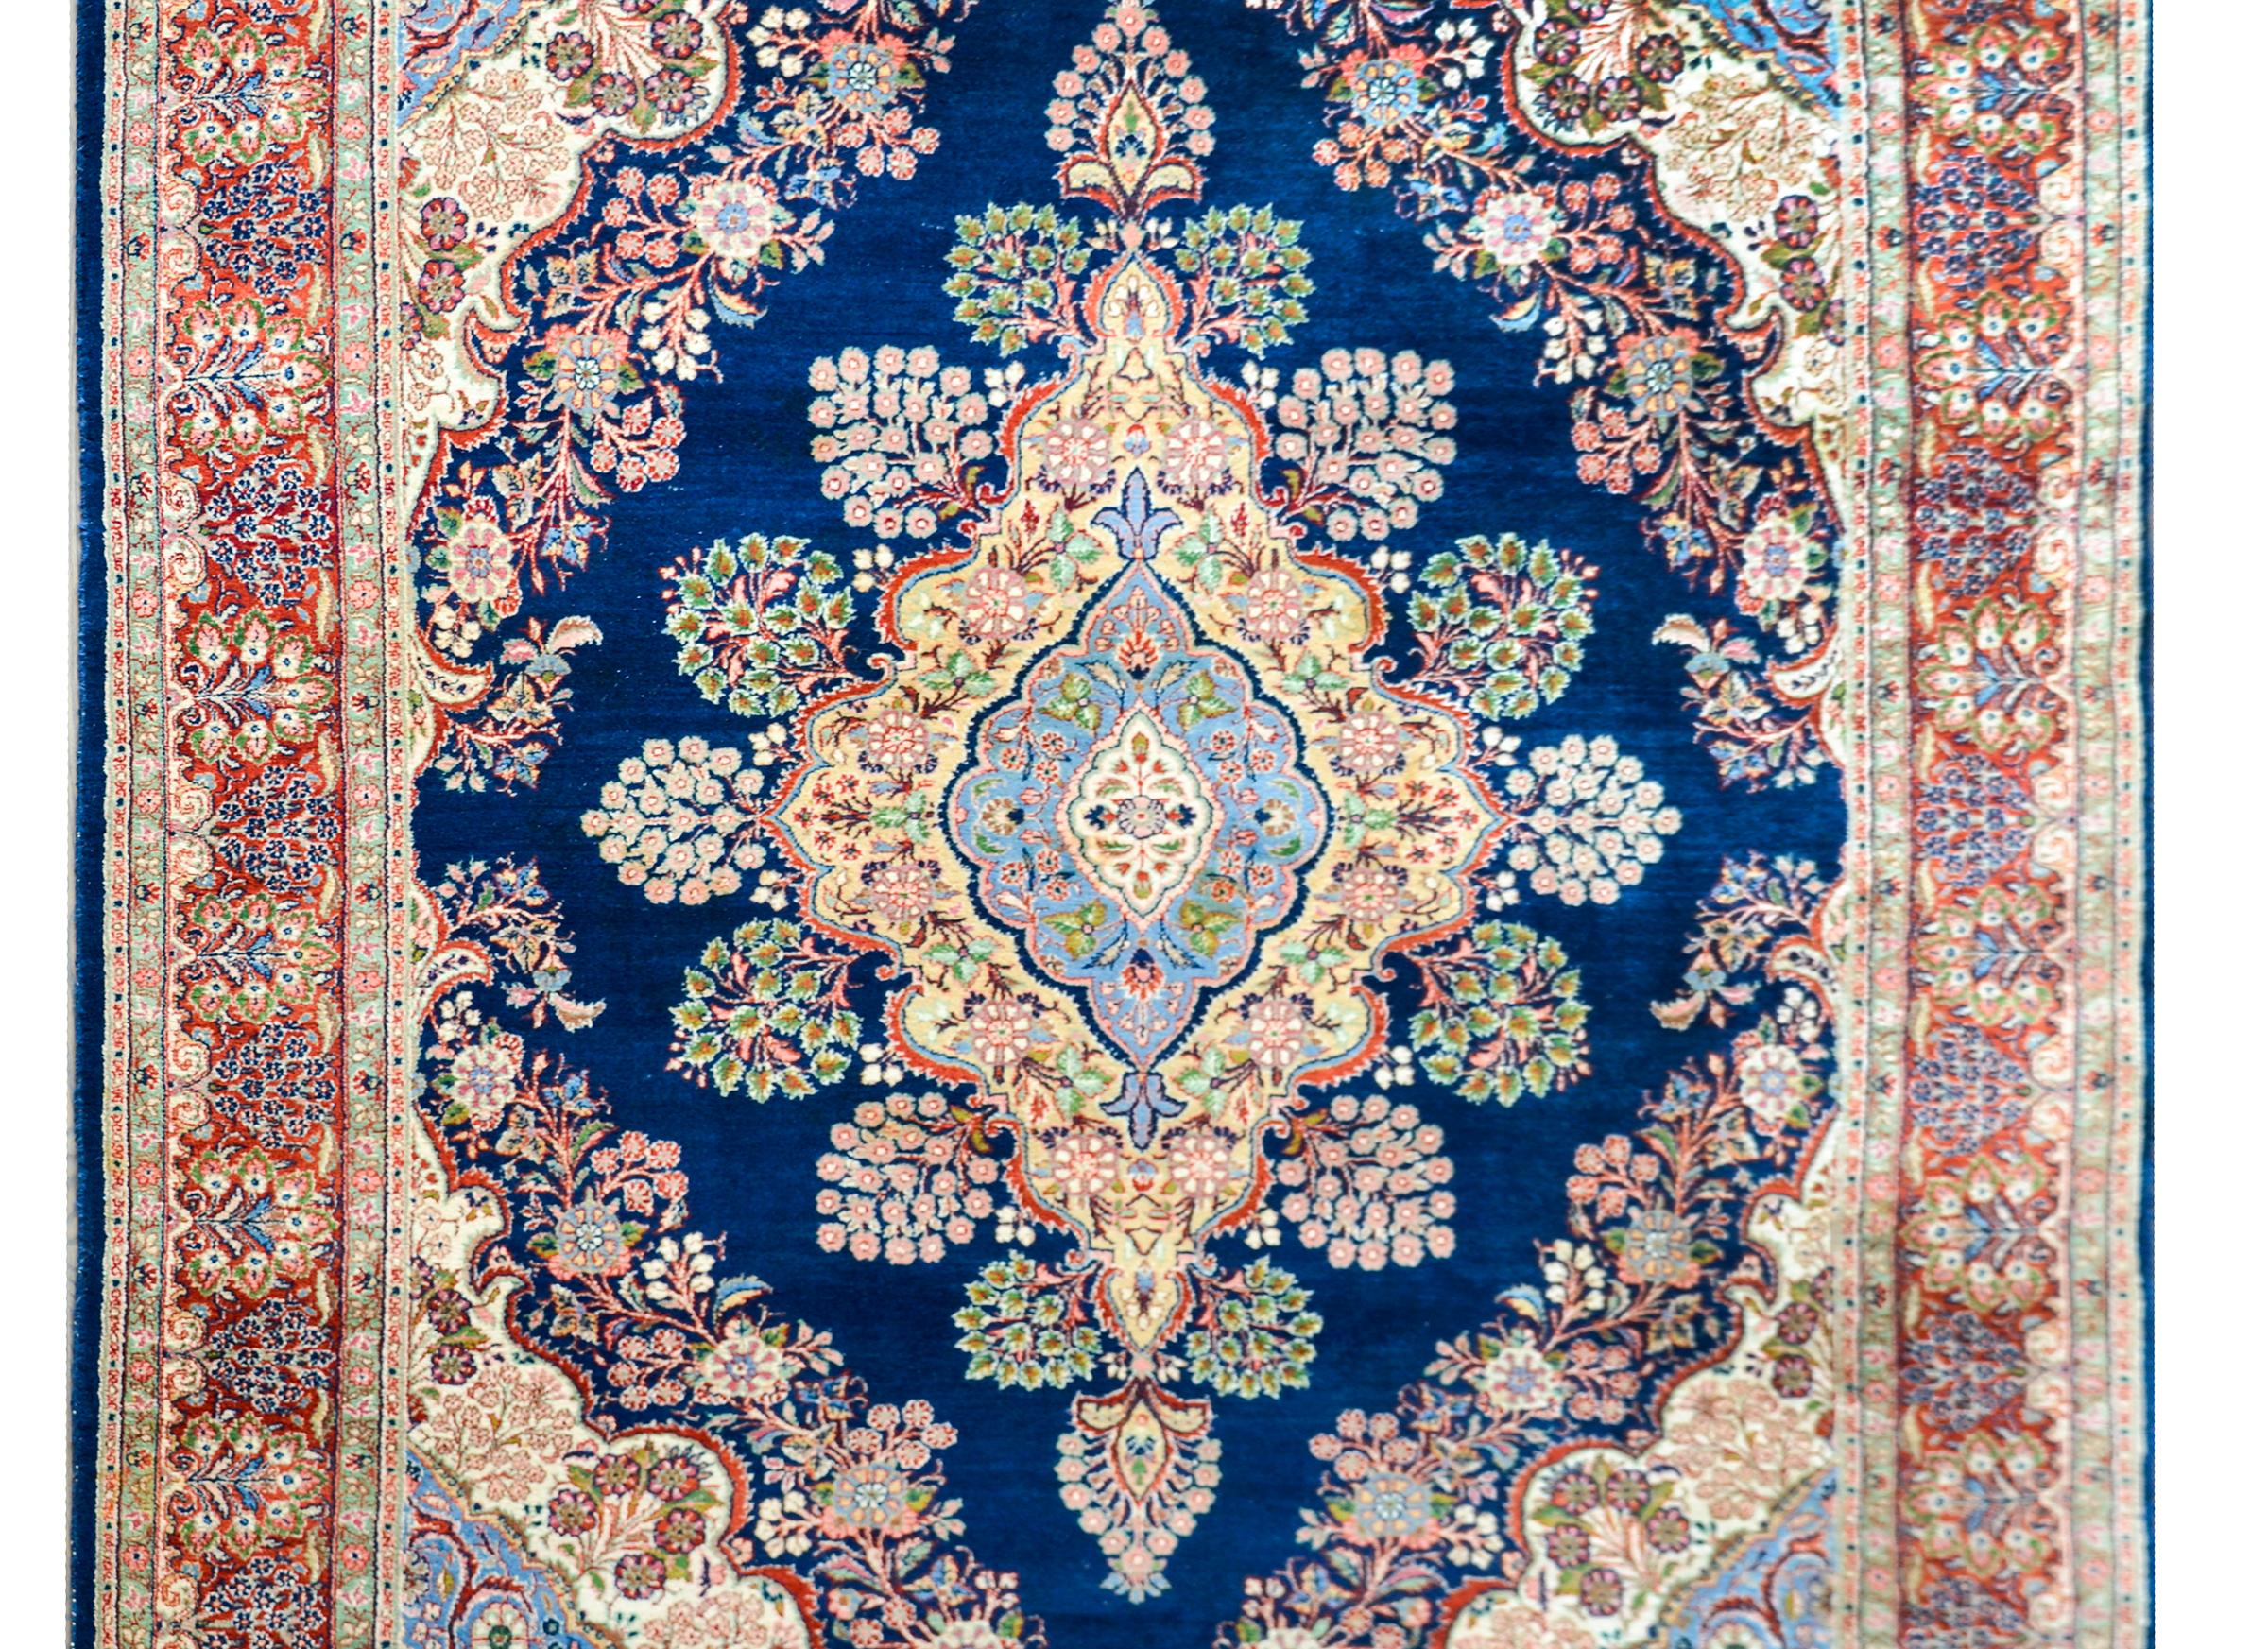 Ein fantastischer persischer Täbriz-Teppich aus dem 20. Jahrhundert mit einem großen zentralen floralen Rautenmedaillon, das in unzähligen Farben gewebt ist, darunter Gelb, Grün, Karminrot, Rosa und helles Indigo, und das alles vor einem dunklen